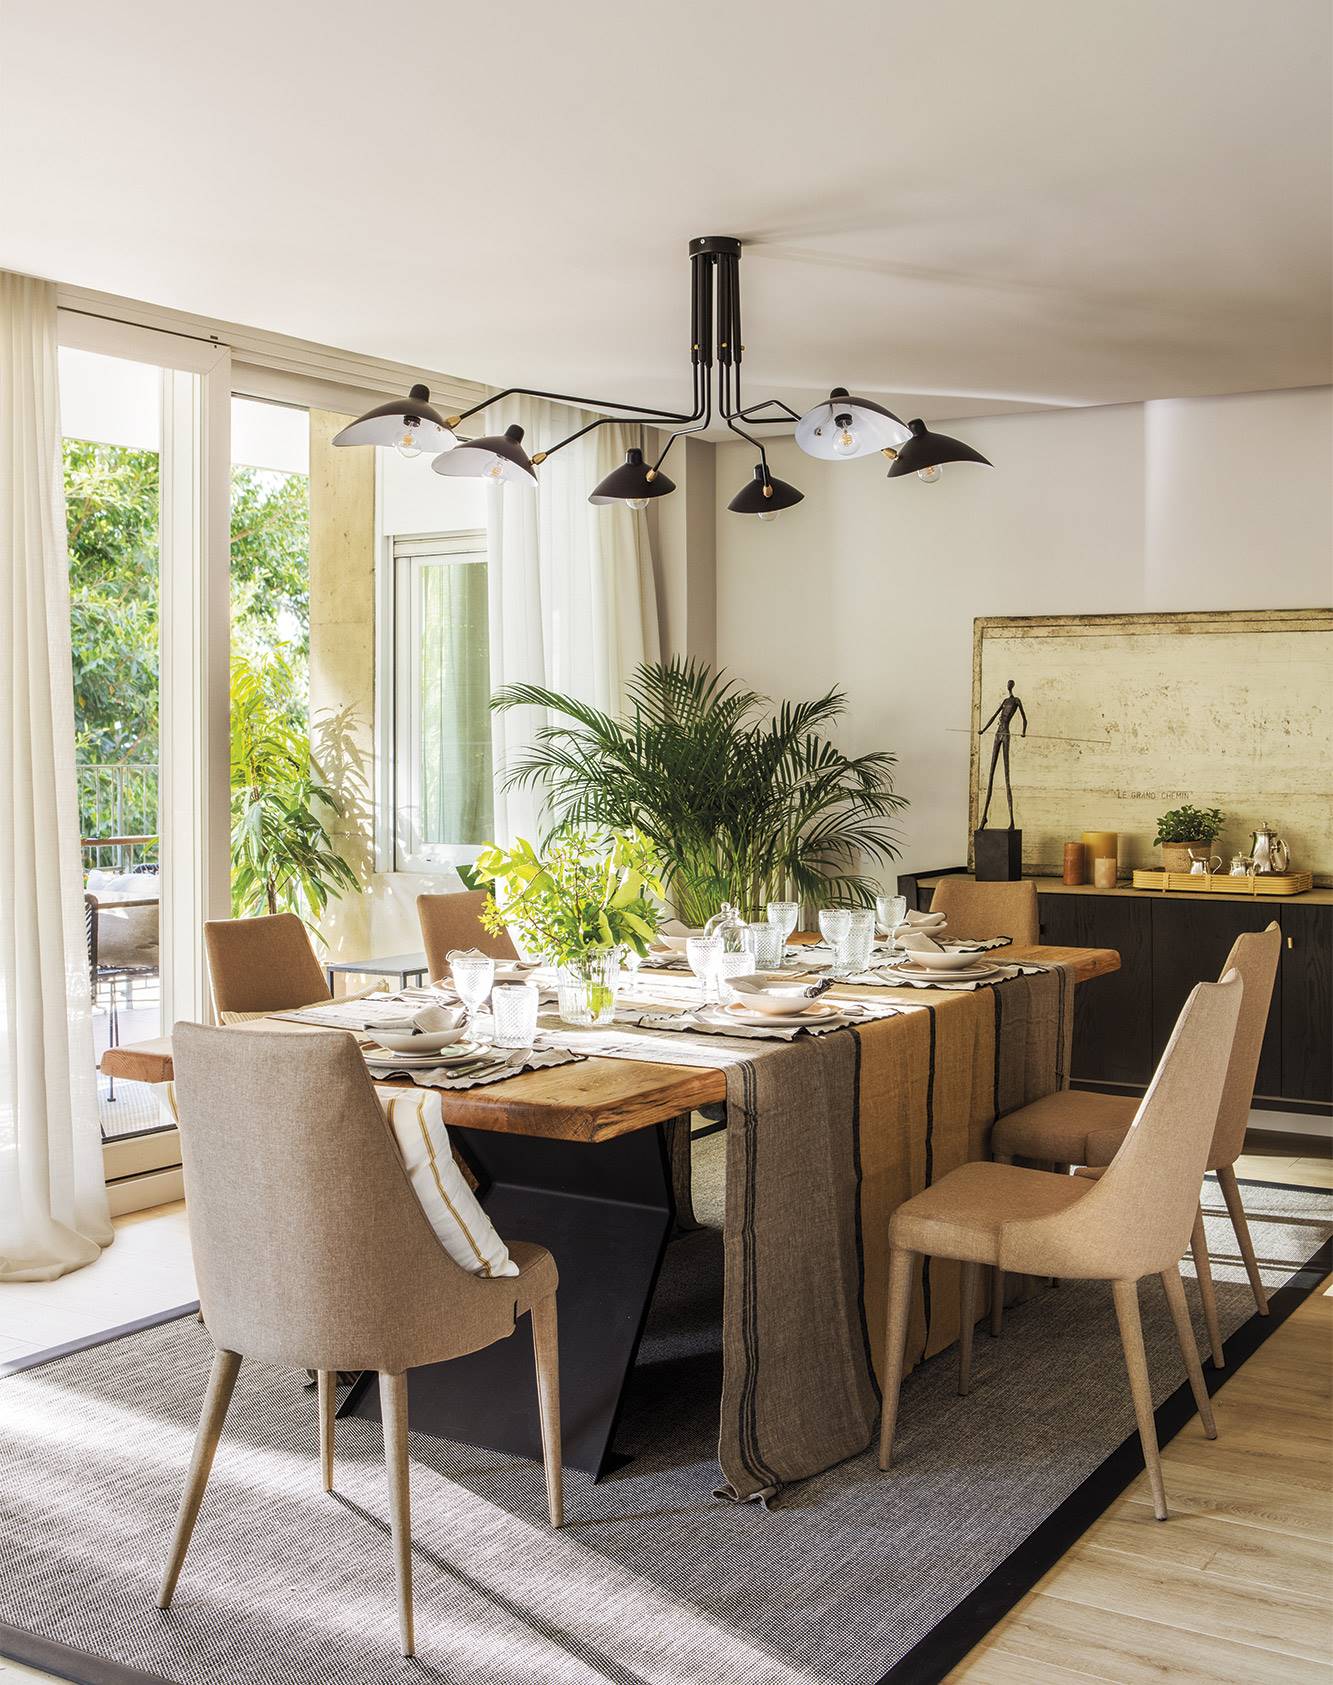 Comedor con mesa de madera, sillas tapizadas y lámpara negra de estilo moderno.  